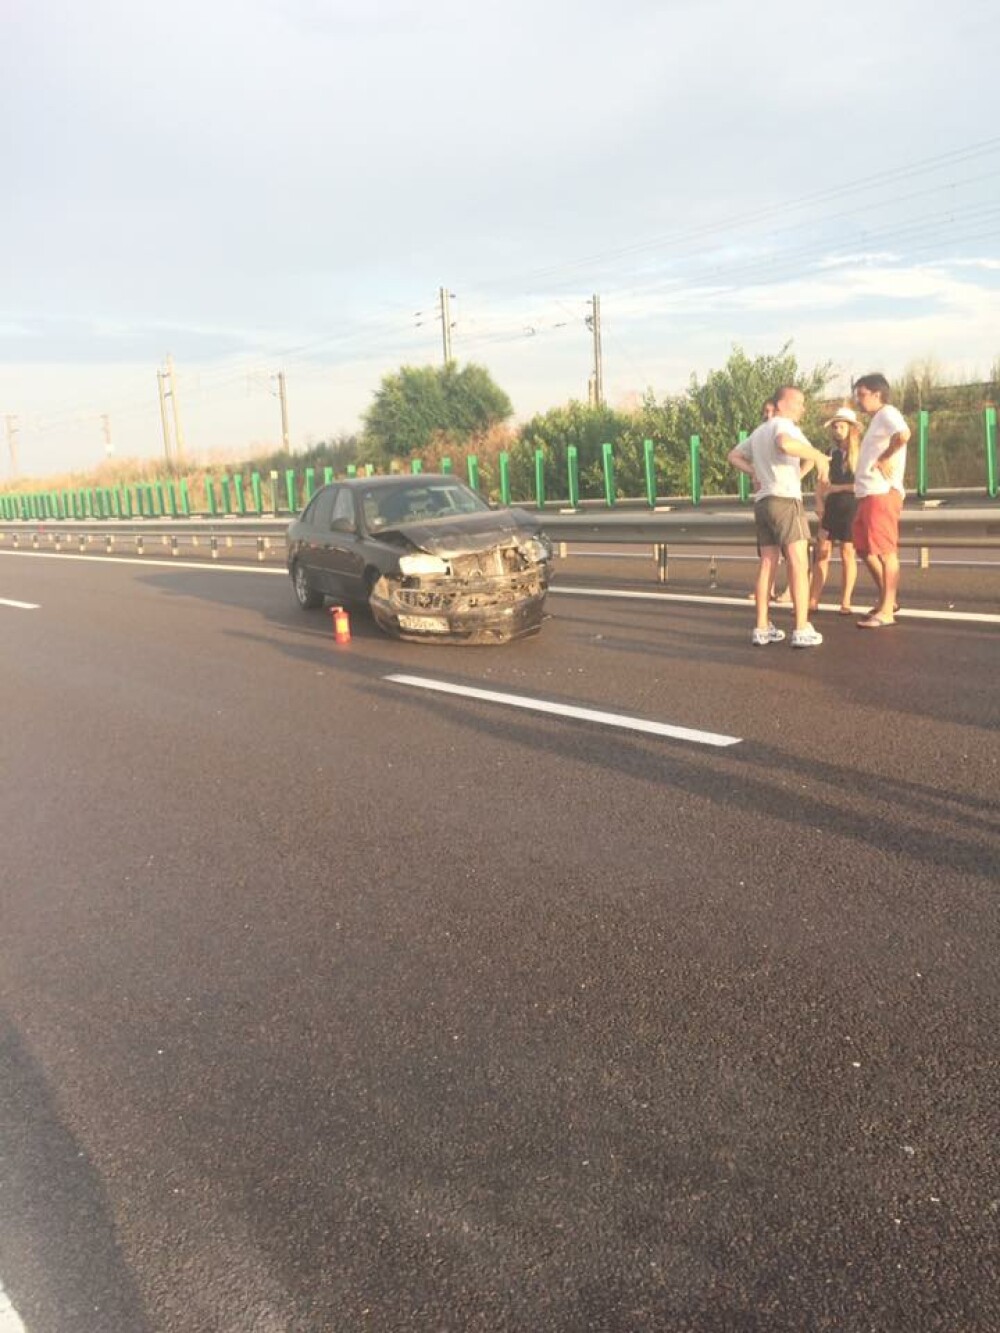 Accident in lant pe Autostrada Soarelui: o persoana a fost grav ranita. Traficul s-a reluat spre Capitala pe 2 benzi. FOTO - Imaginea 5